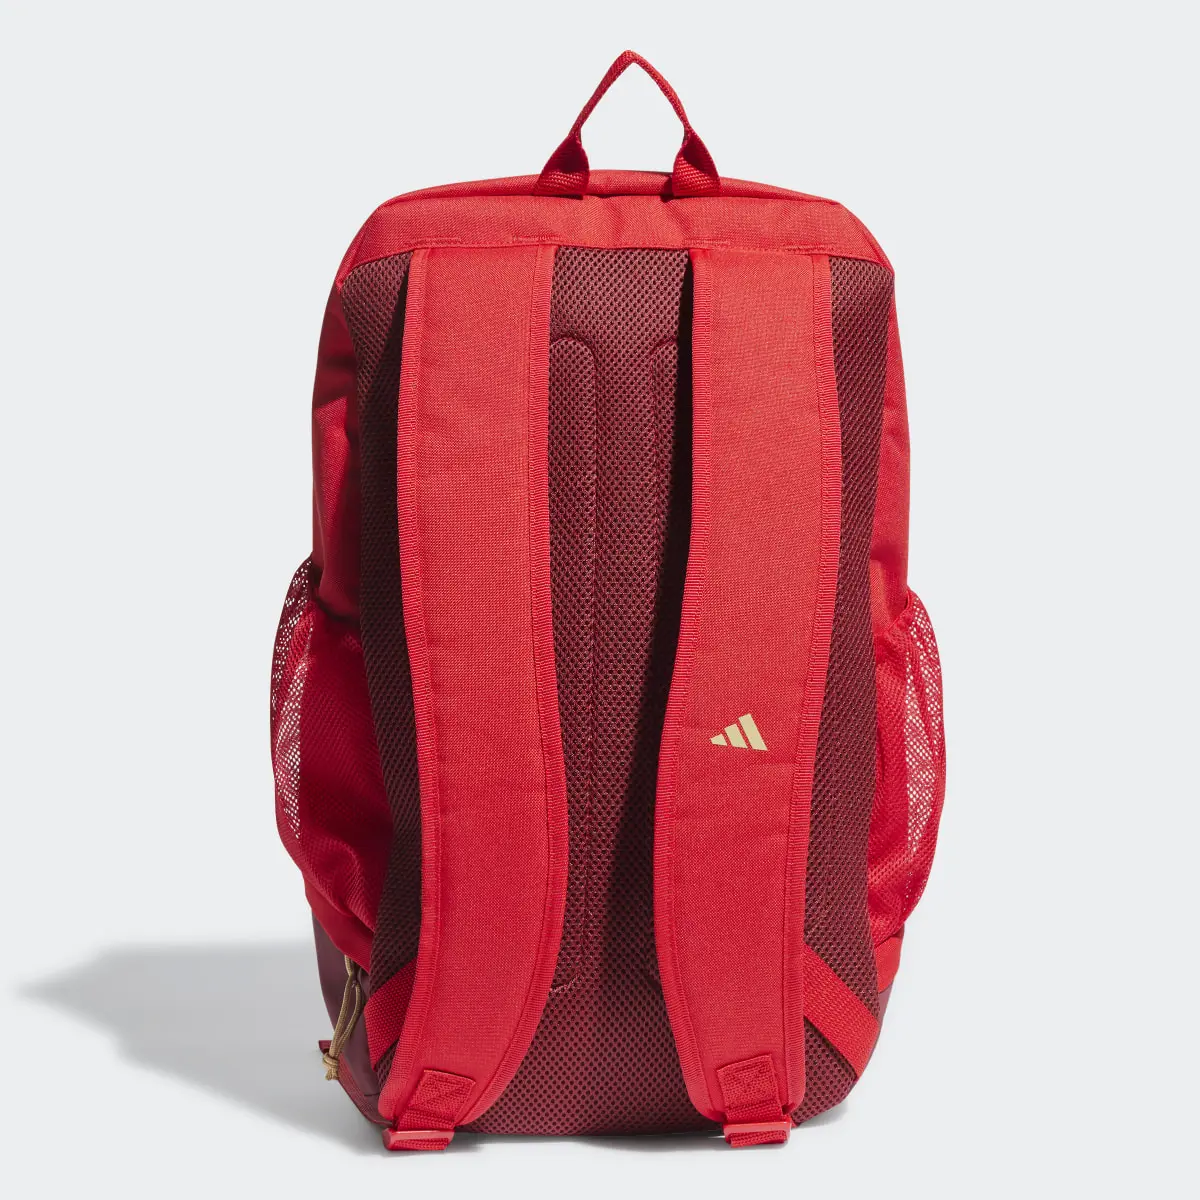 Adidas Arsenal Backpack. 3